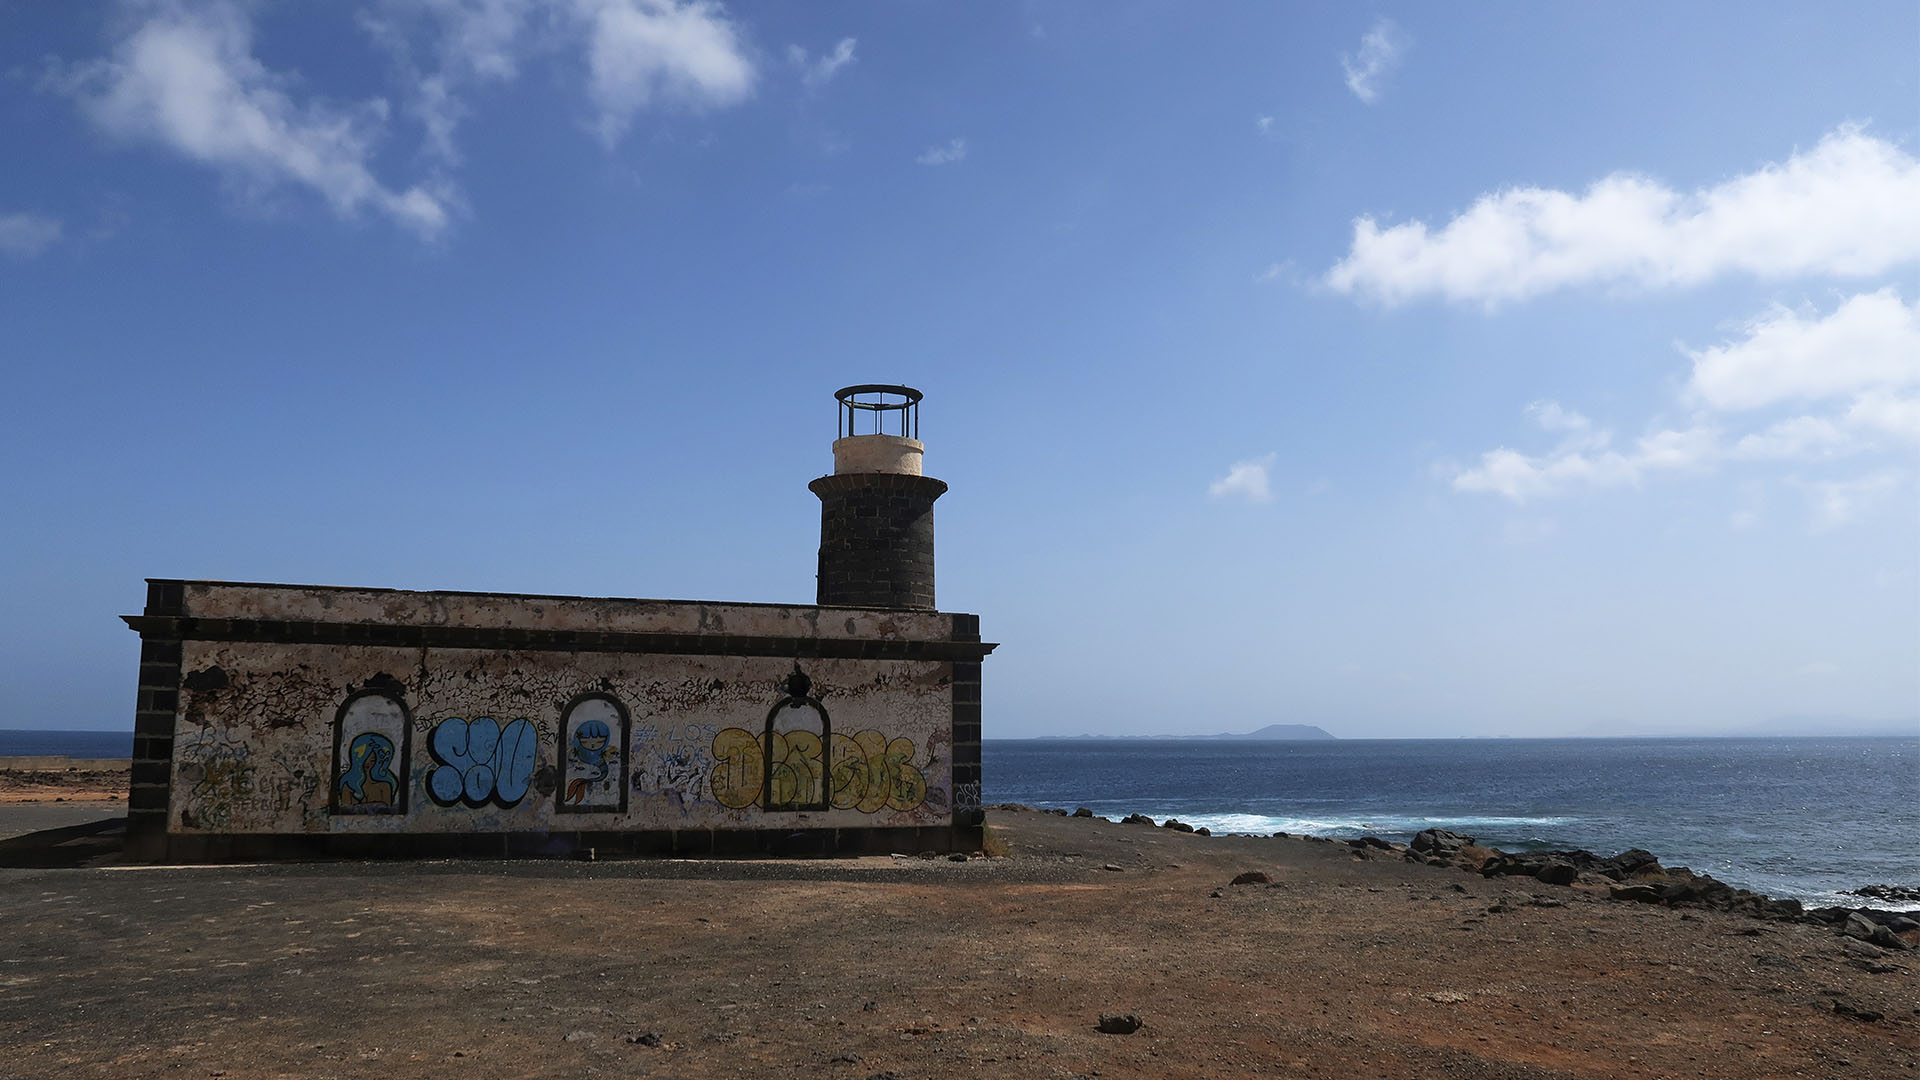 Der alte Leuchtturm Faro Punta de Pechiguera Lanzarote. Im Hintergrund zeichnet sich die Isla de Lobos ab.